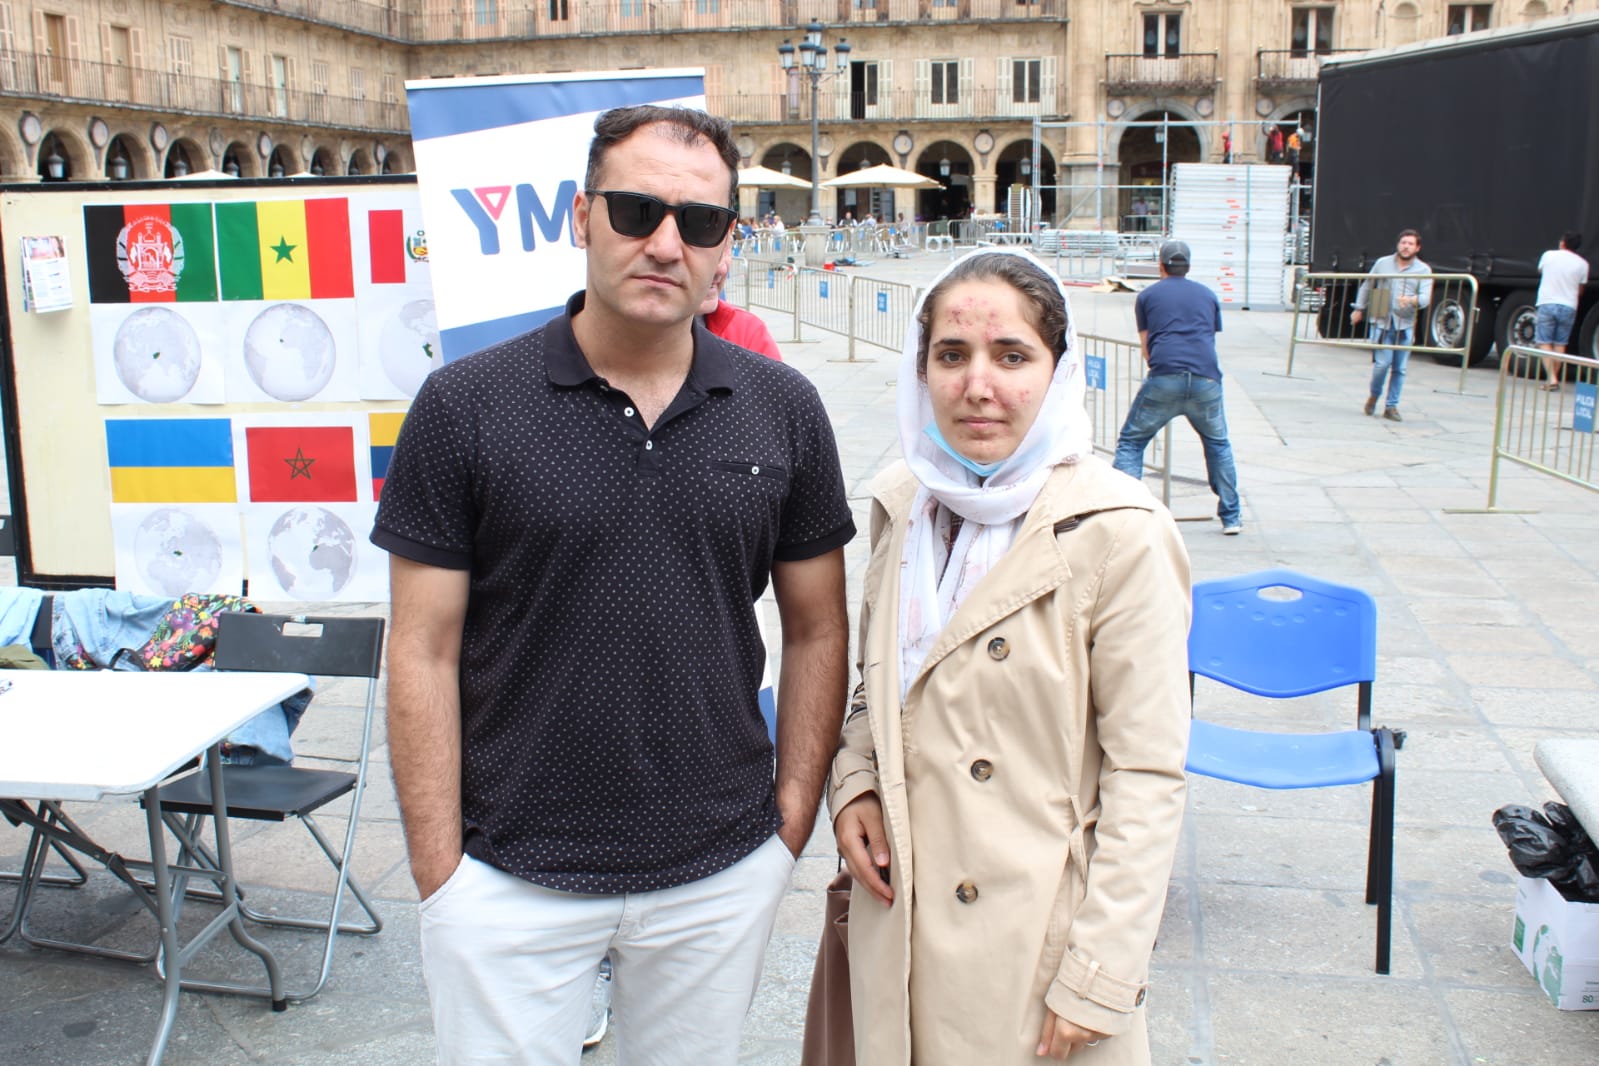 Masooda Momand, junto a su marido en la Plaza Mayor de Salamanca. Foto S24H.